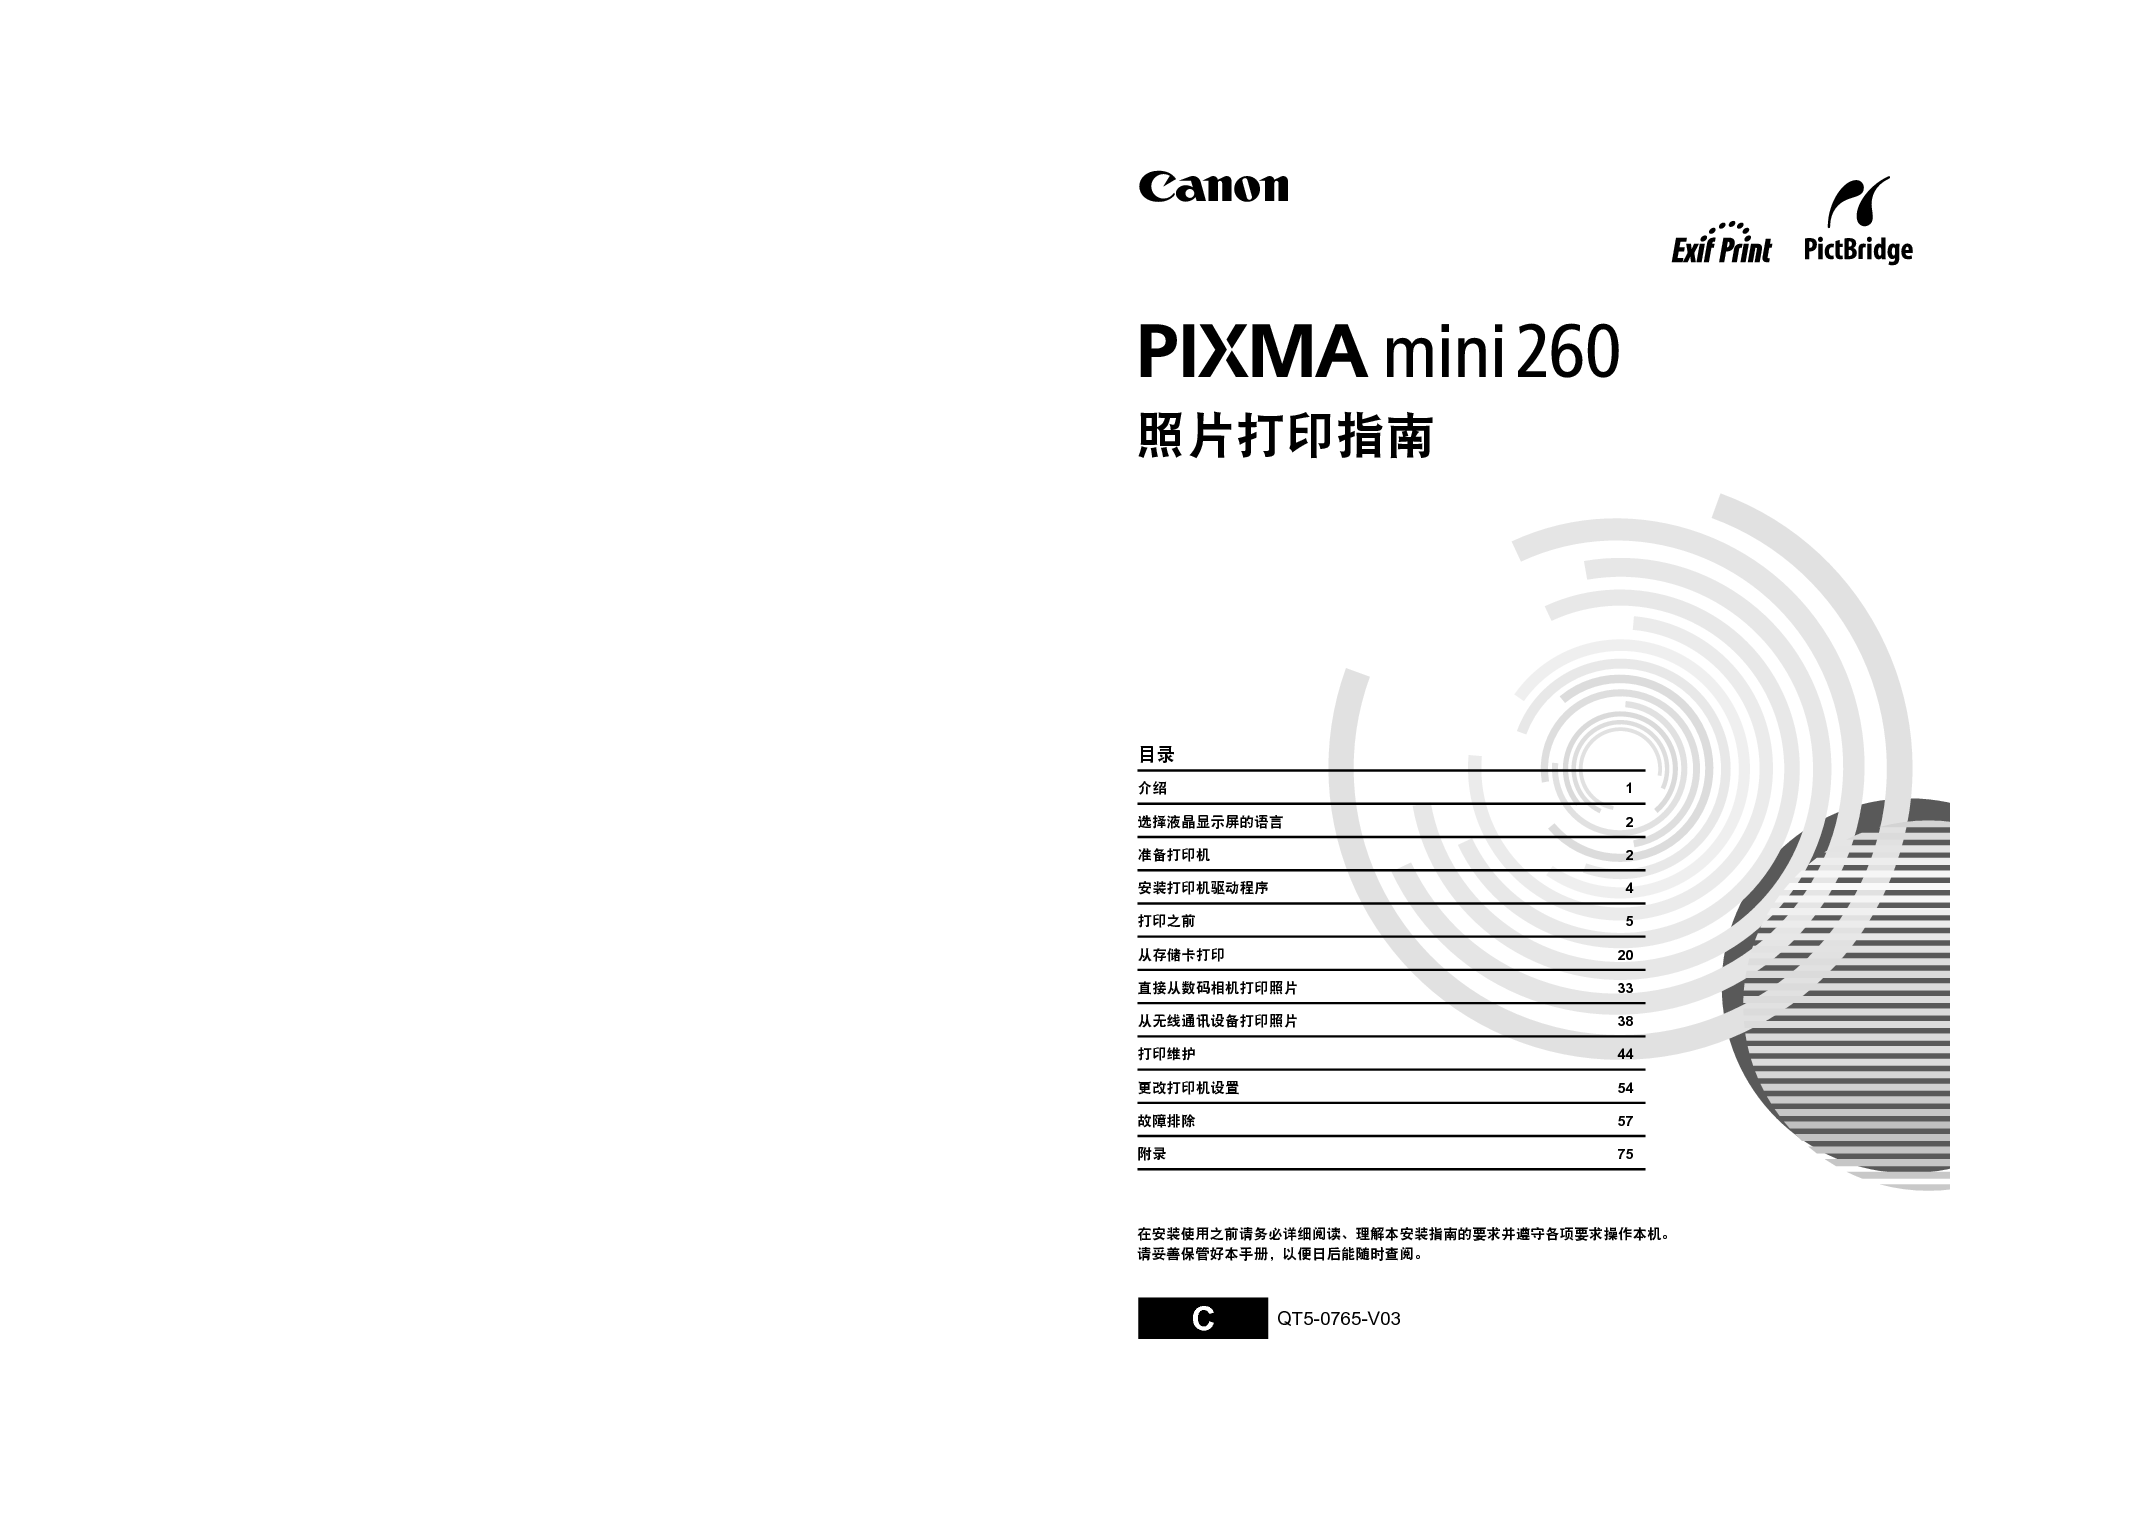 佳能 Canon PIXMA mini260 照片打印 用户指南 封面